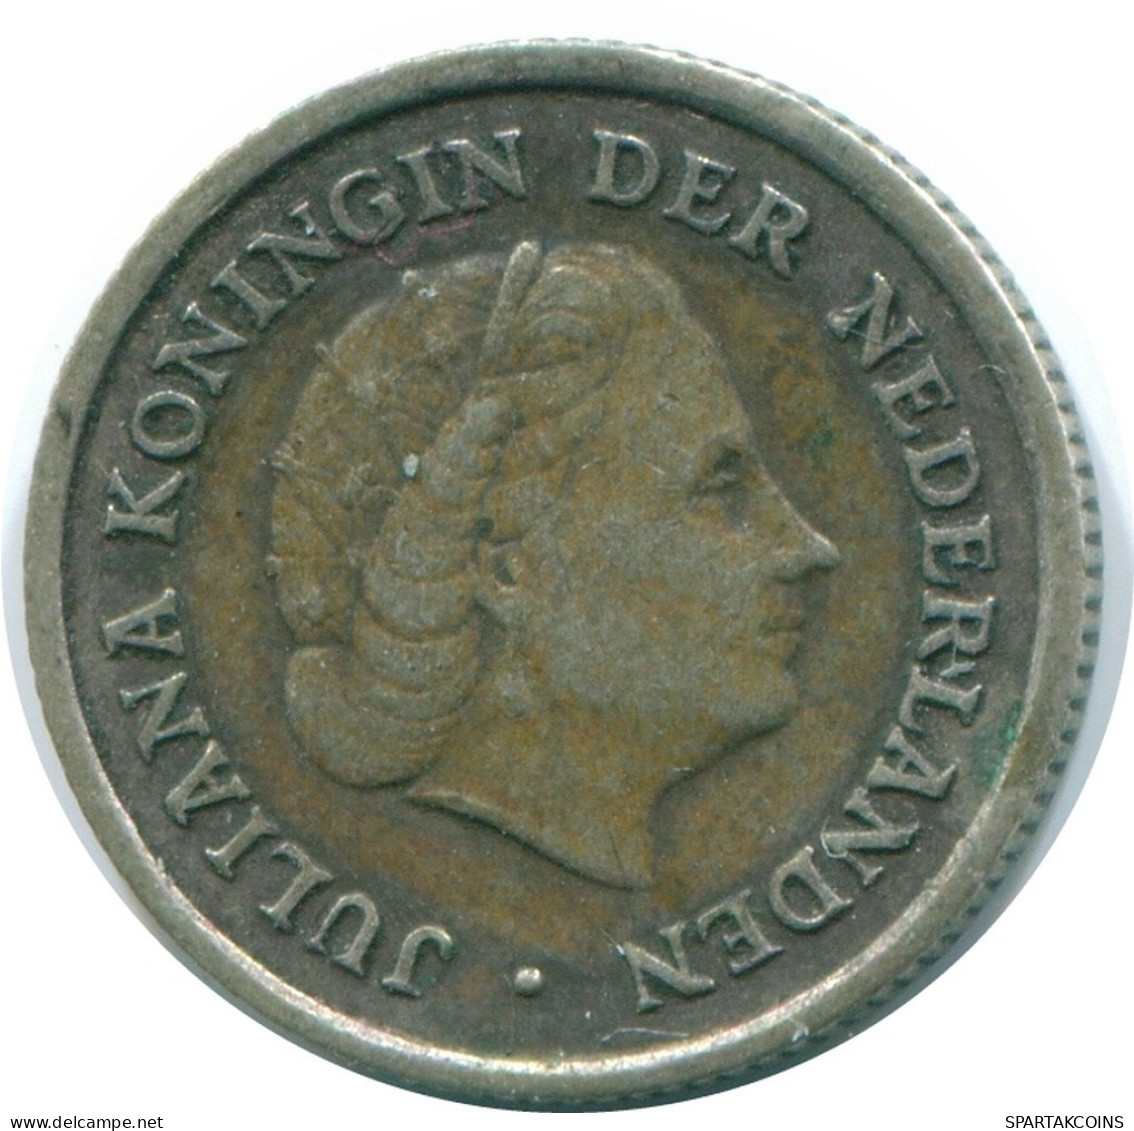 1/10 GULDEN 1962 NIEDERLÄNDISCHE ANTILLEN SILBER Koloniale Münze #NL12444.3.D.A - Niederländische Antillen